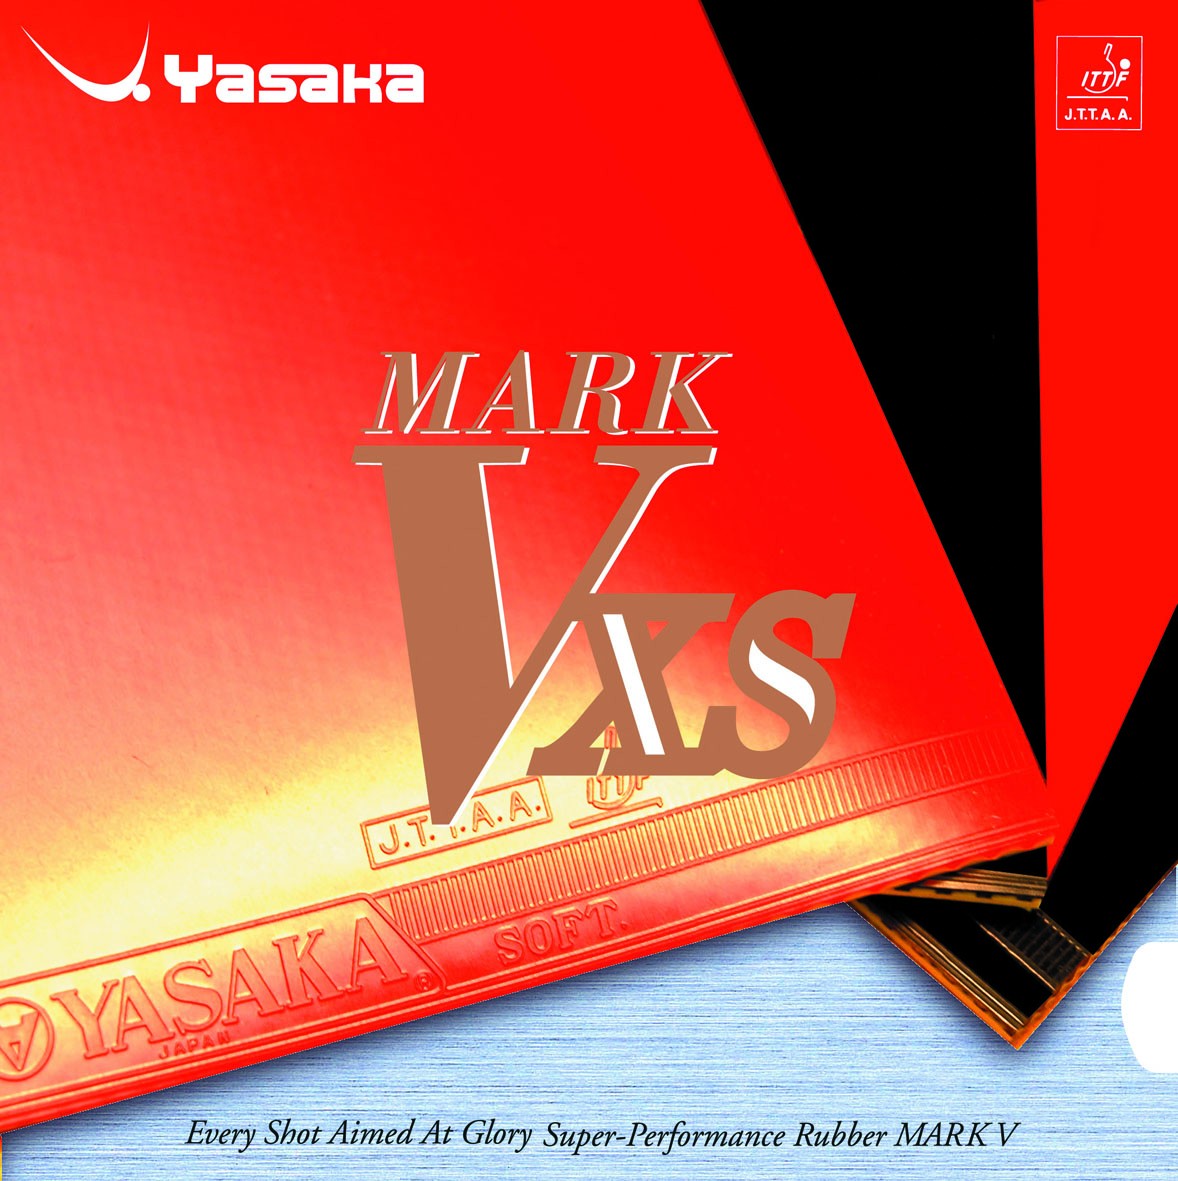 Alle Varianten Tischtennisbelag UVP 35,90 Yasaka Mark V OVP Neu